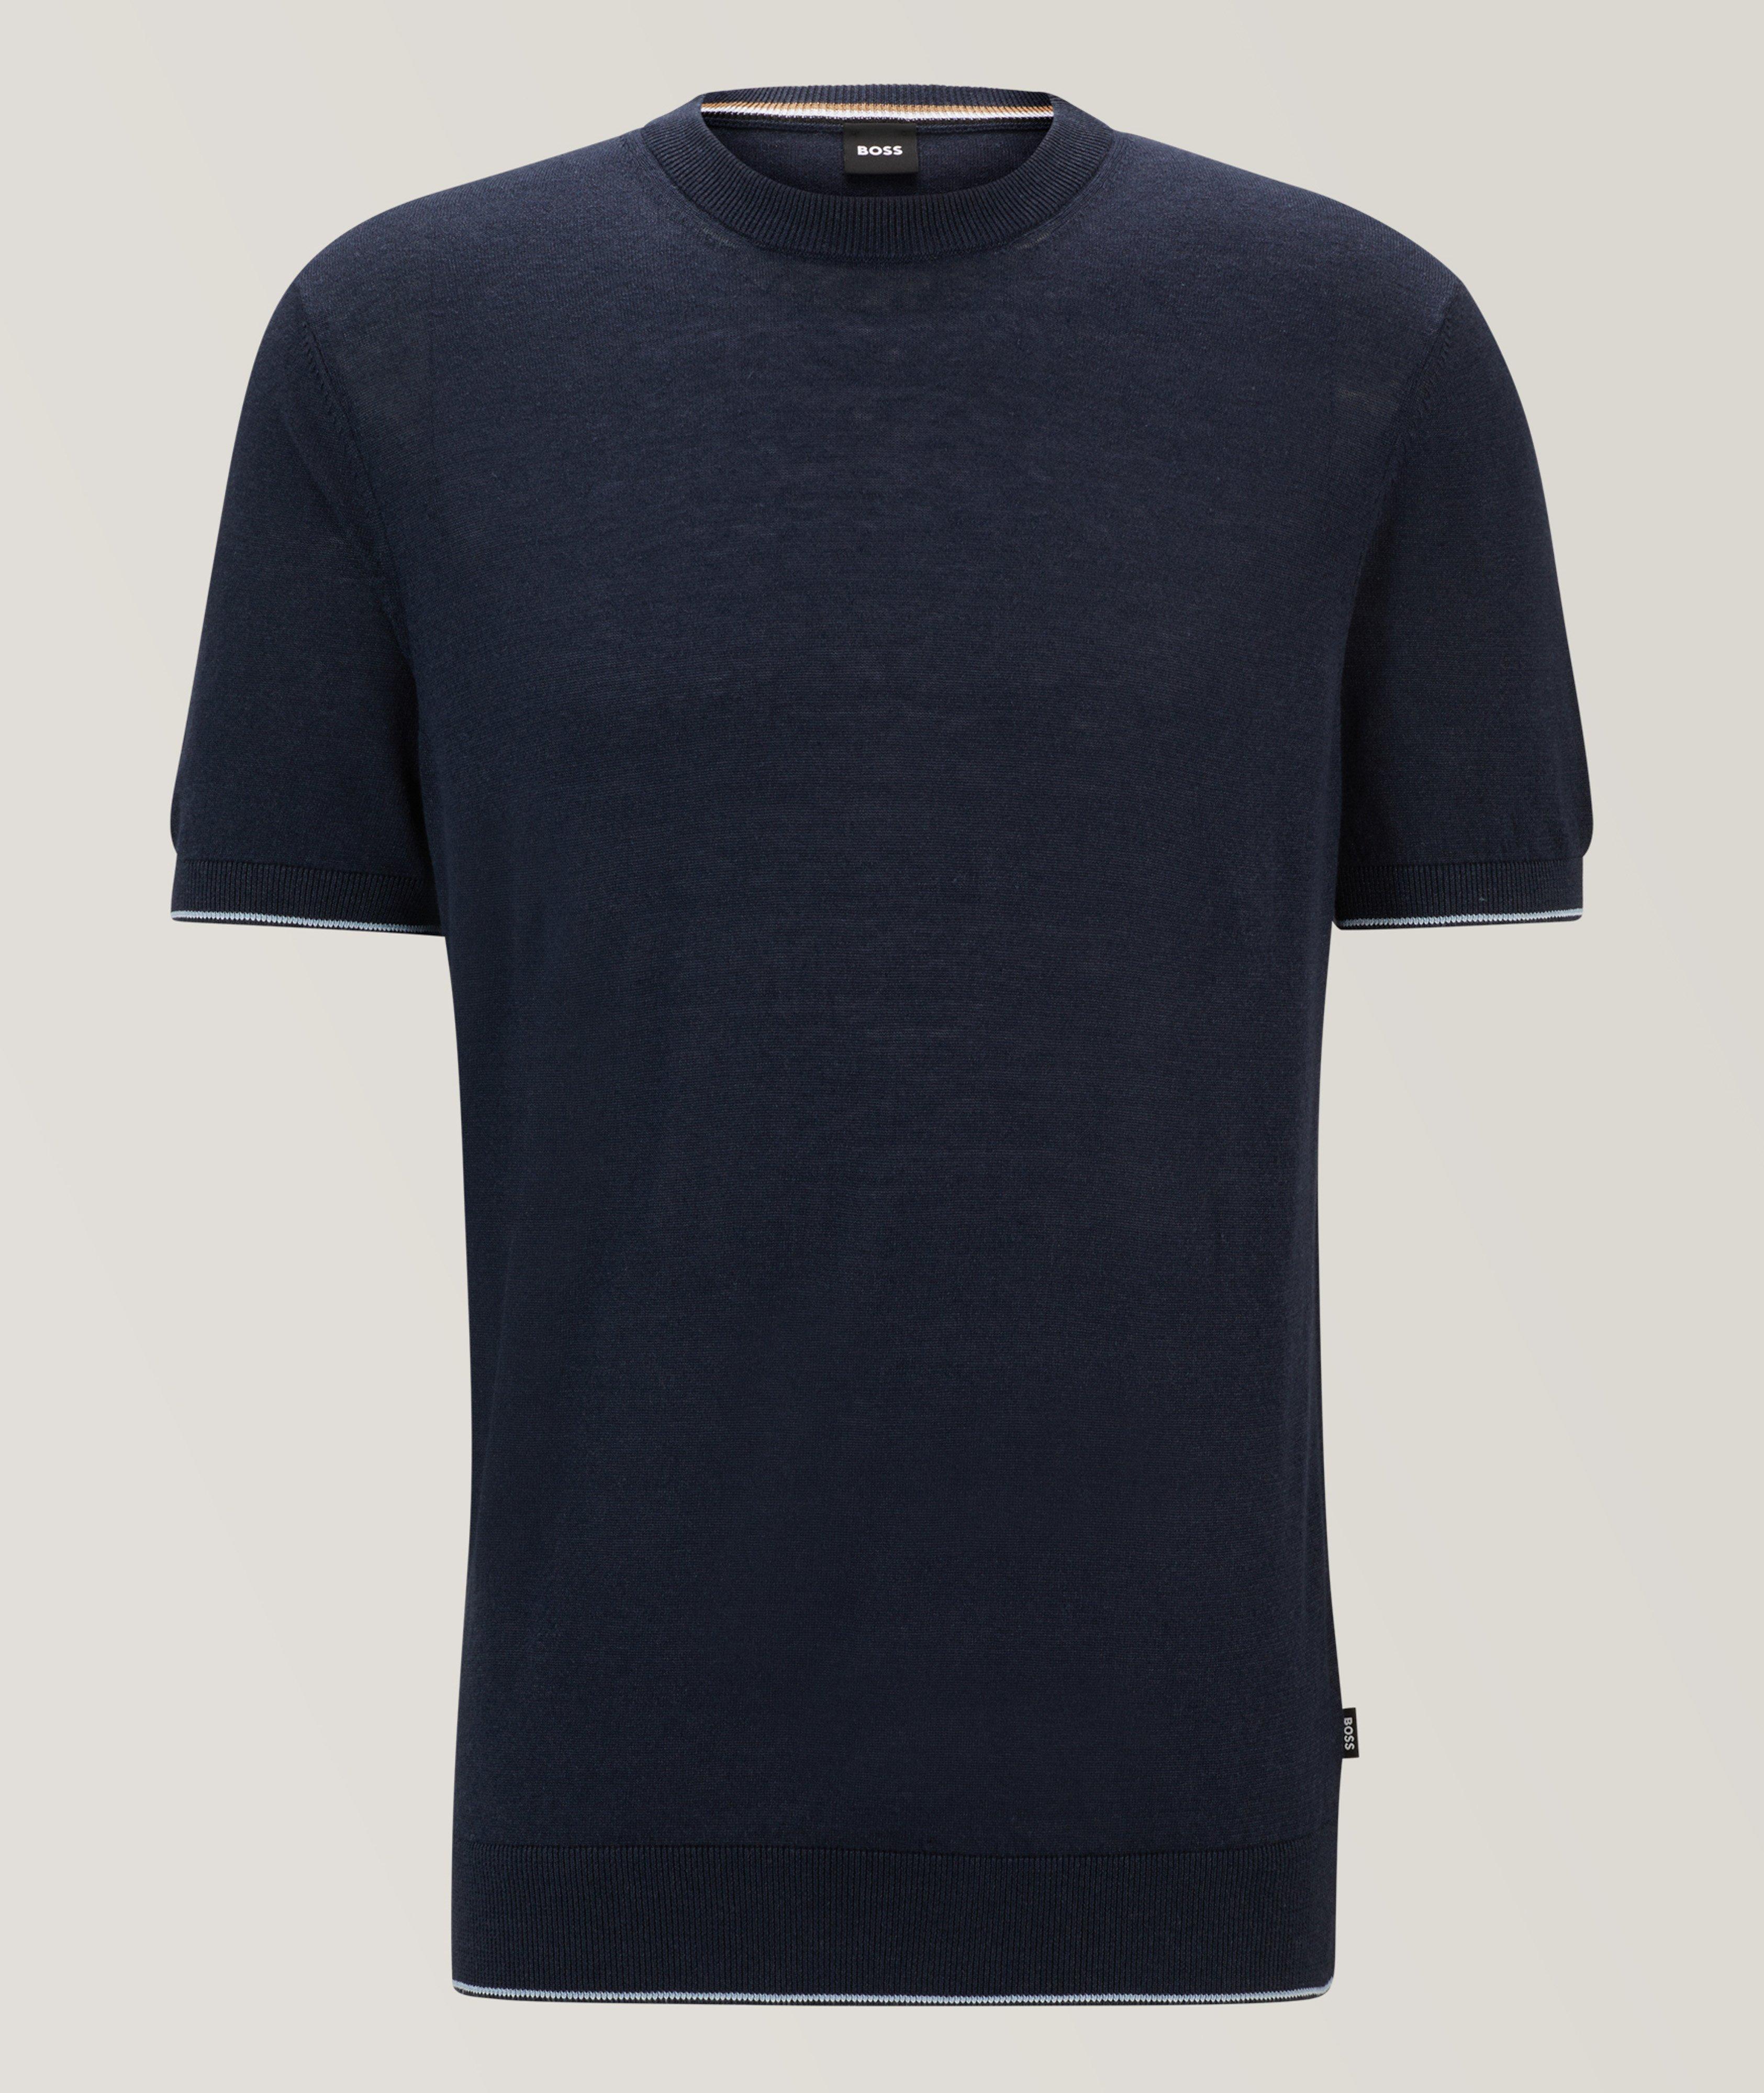 Tramonte Linen-Blend T-Shirt image 0